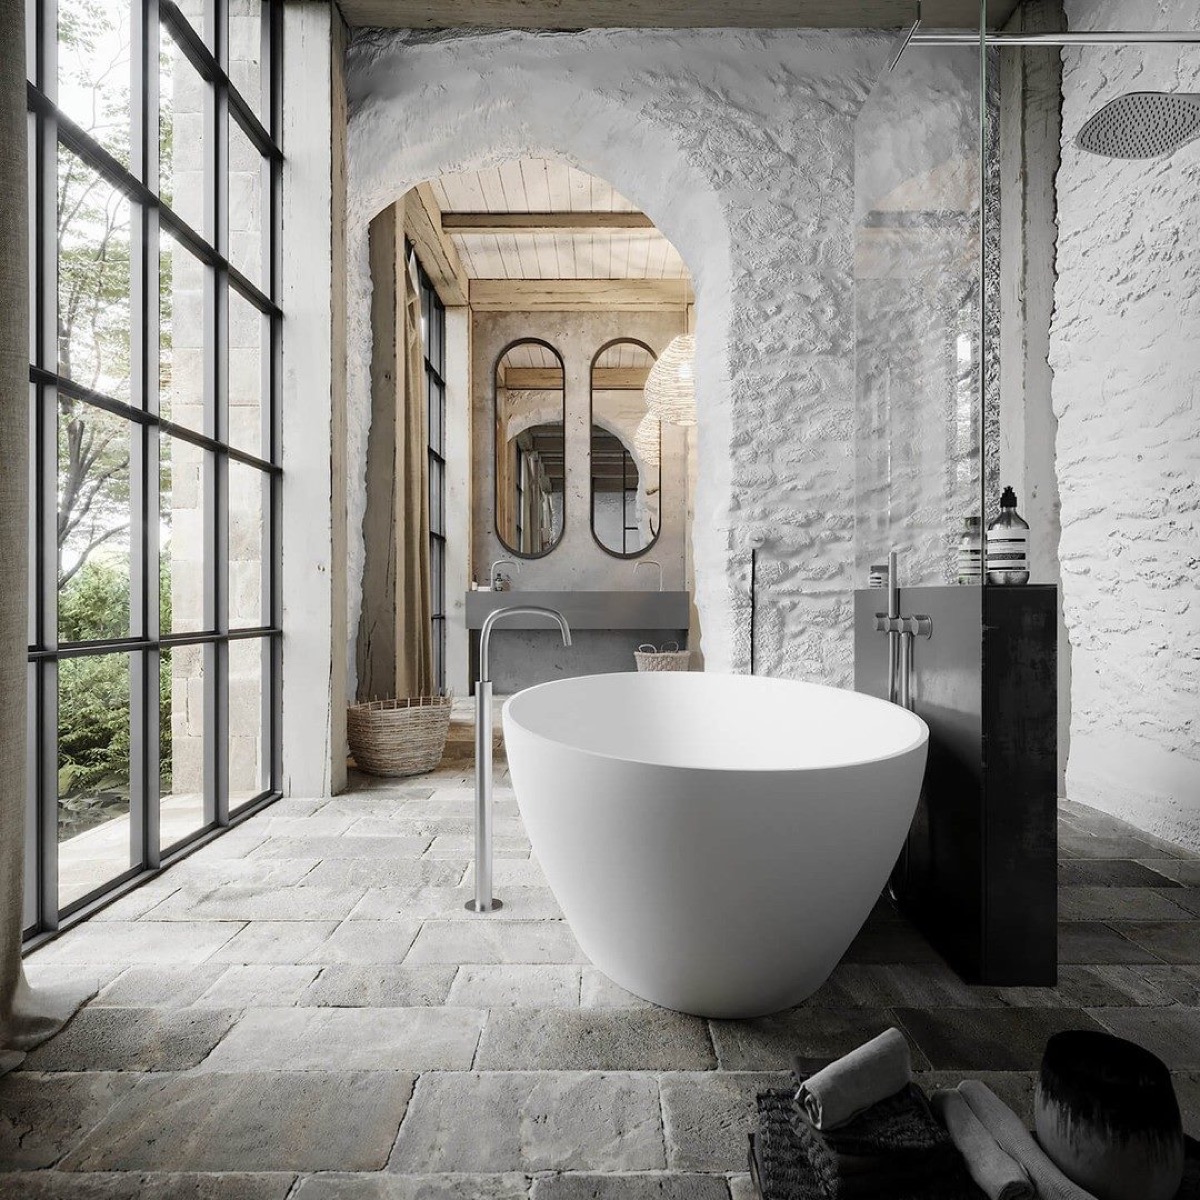 Natural Timeless Elegance, Timeless Bathroom Design 2021